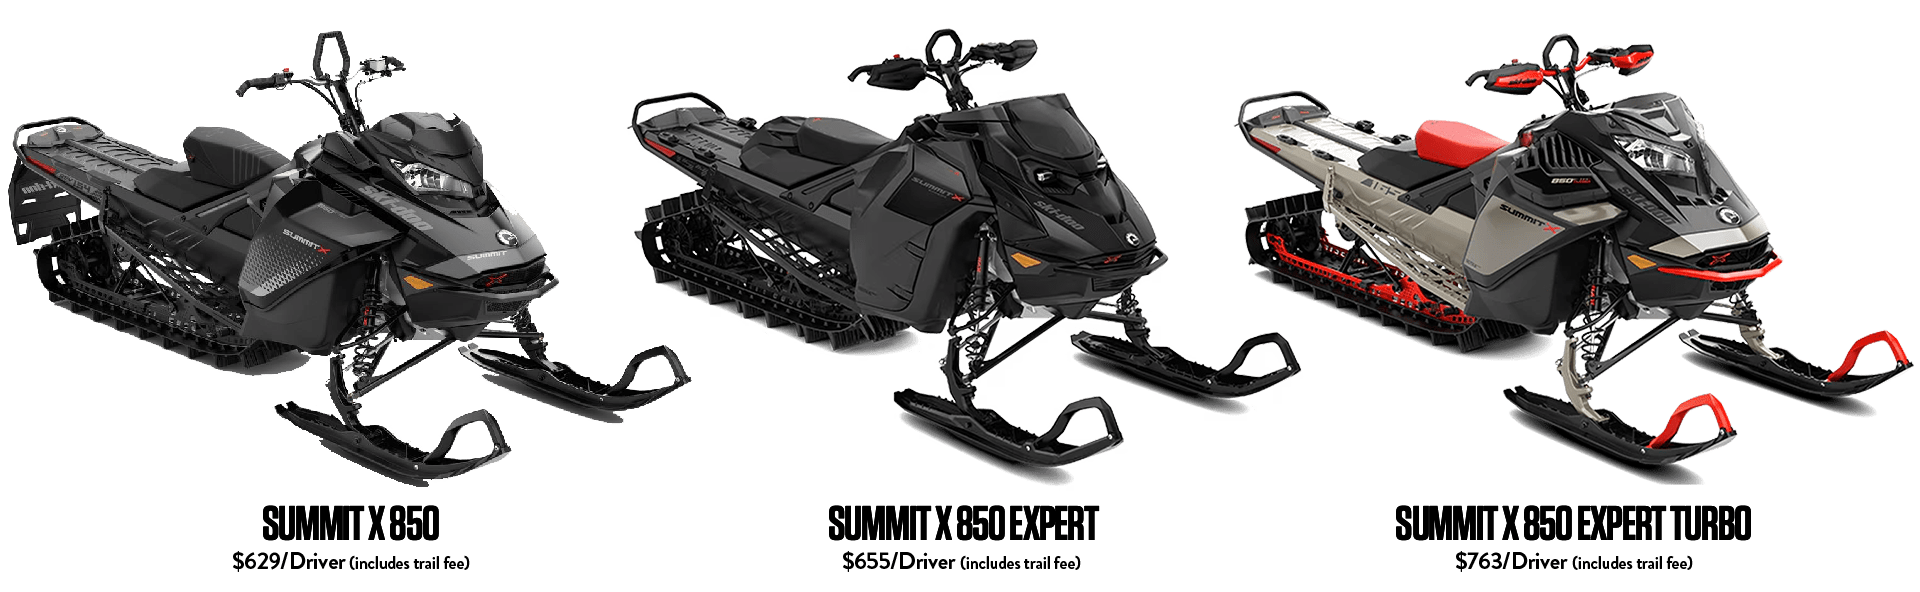 Ski-Doo Summit X 850 snowmobile rentals